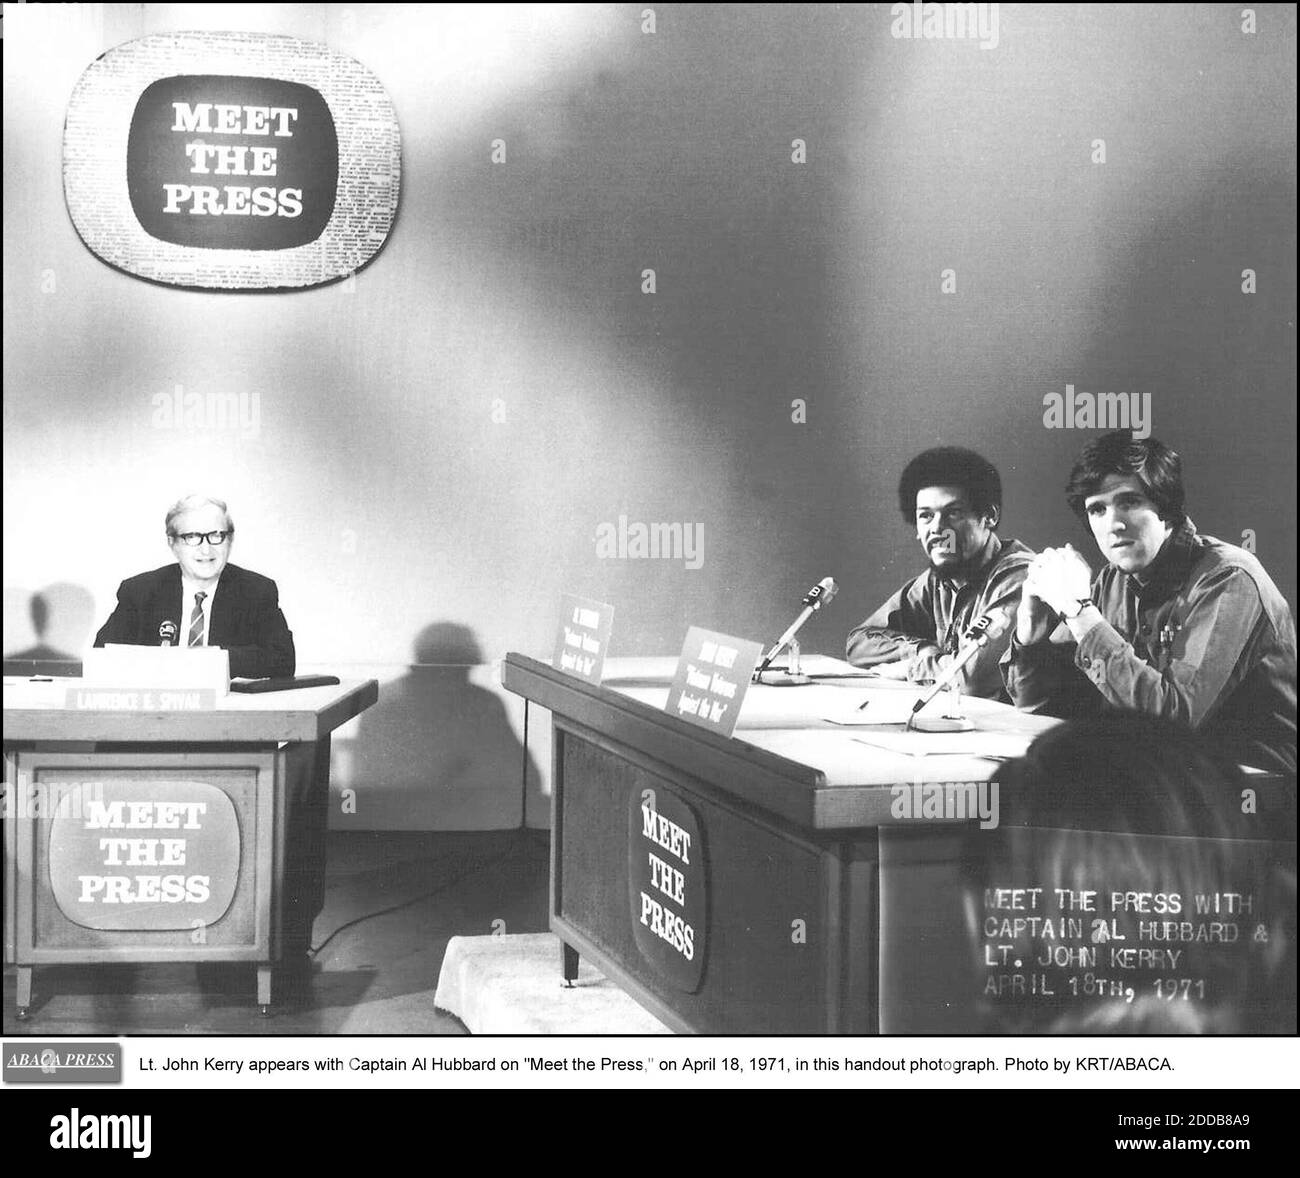 PAS DE FILM, PAS DE VIDÉO, PAS de TV, PAS DE DOCUMENTAIRE - le lieutenant John Kerry apparaît avec le capitaine Al Hubbard sur - rencontrez la presse, - le 18 avril 1971, dans cette photo. Photo par KRT/ABACA. Banque D'Images